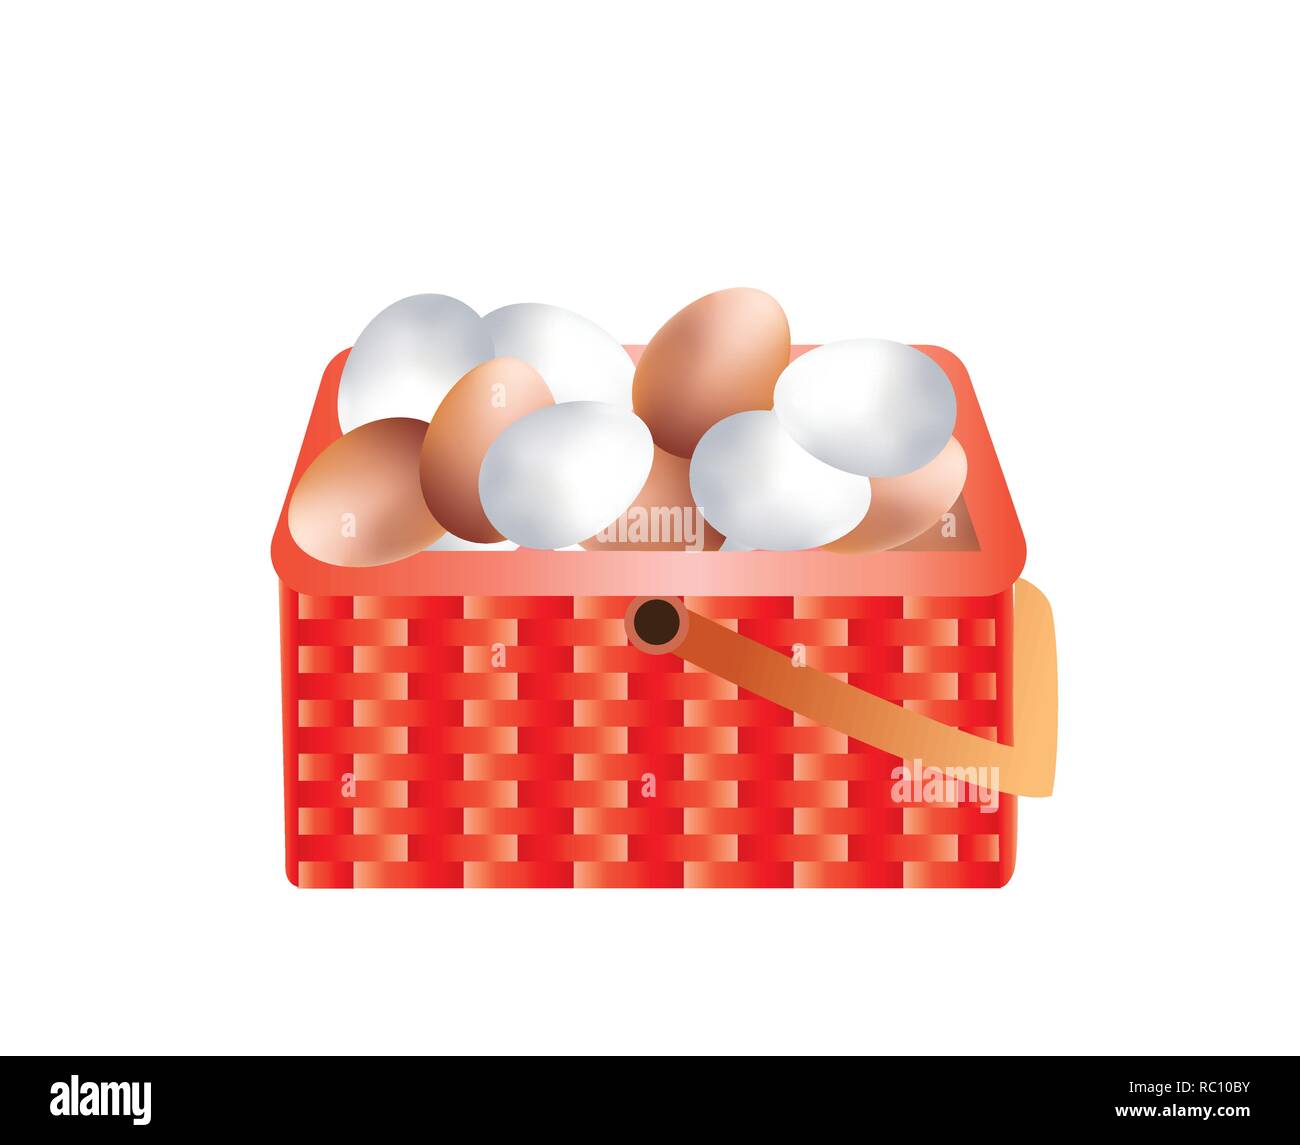 Fresche e di colore marrone e bianco le uova in un cesto di armatura Illustrazione Vettoriale